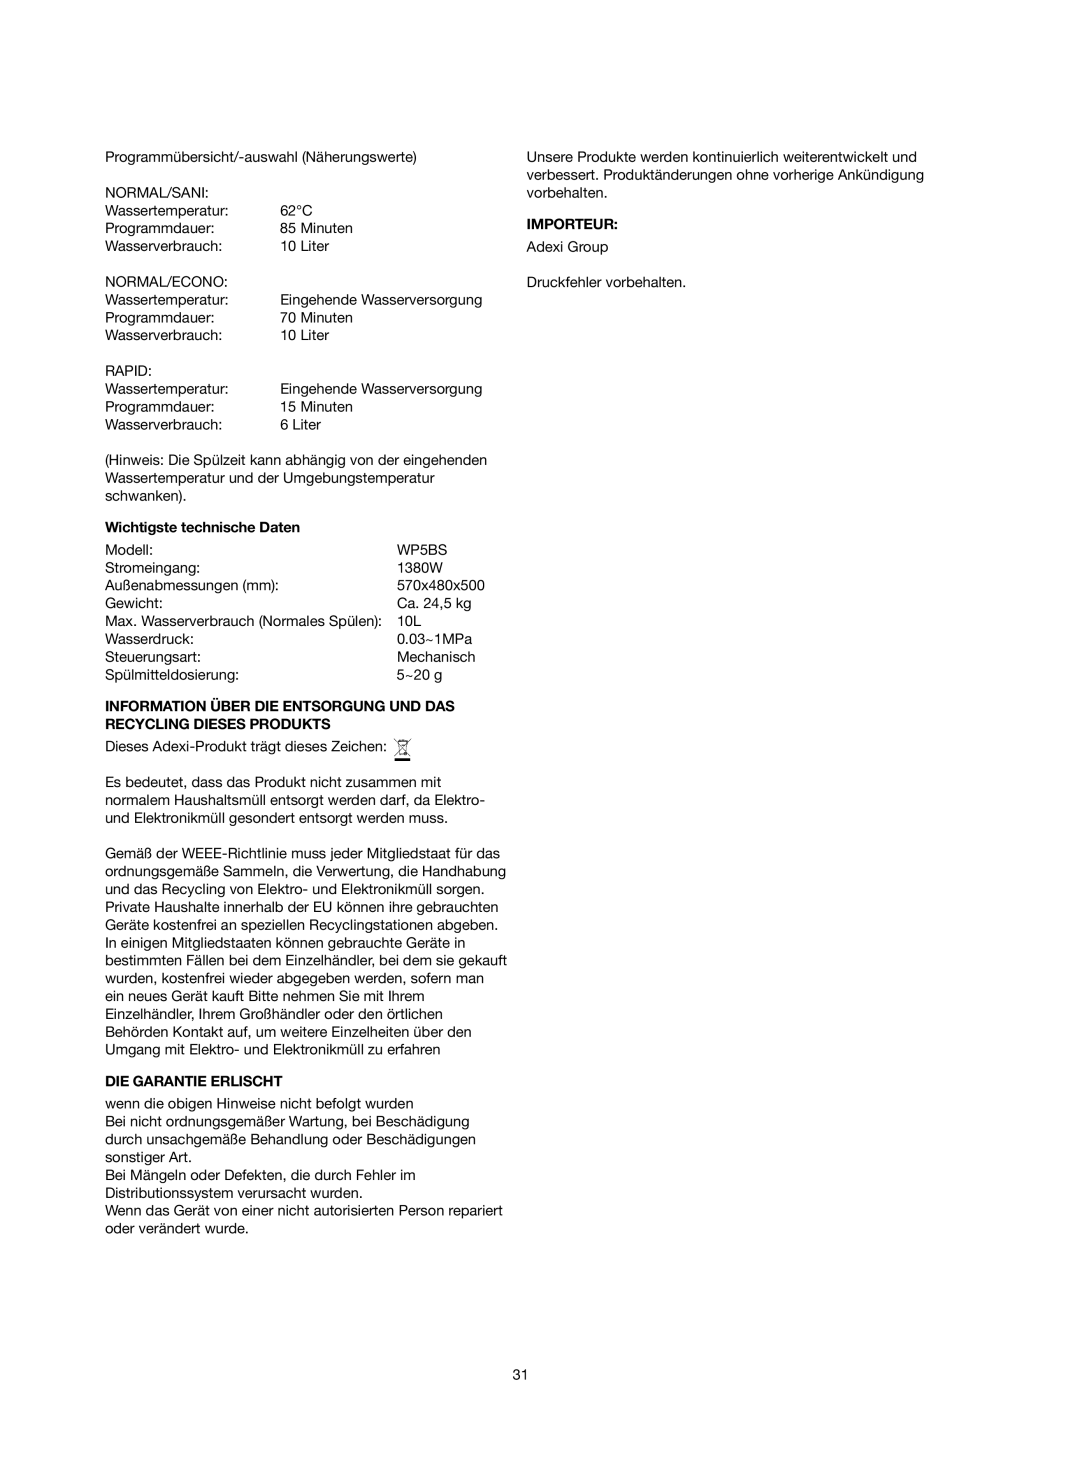 Melissa 758-007 manual Wichtigste technische Daten, Die Garantie Erlischt, Importeur 